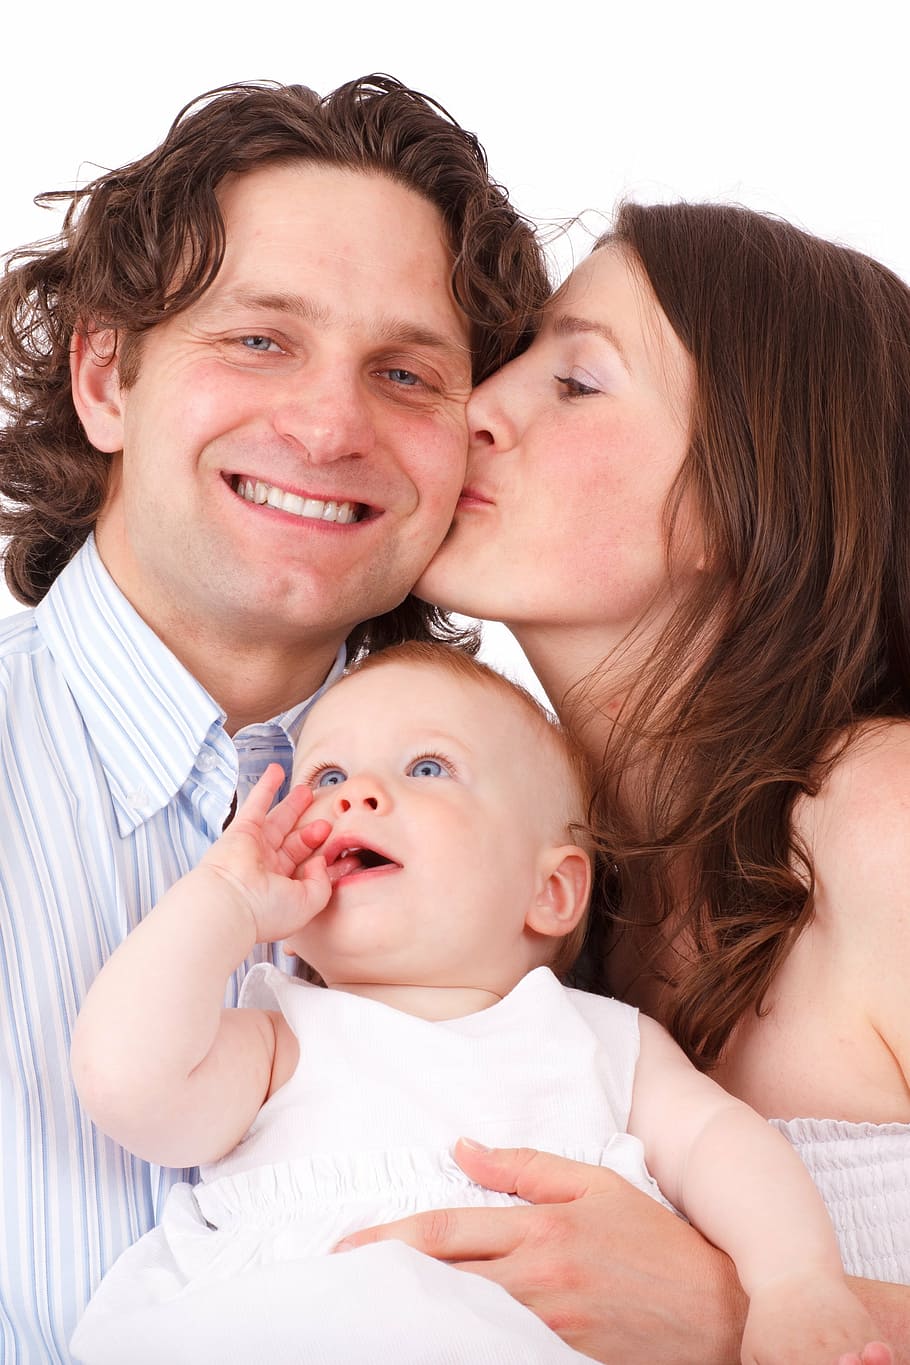 foto keluarga, bayi, anak, wajah, keluarga, ayah, grup, kebahagiaan, bahagia, ciuman